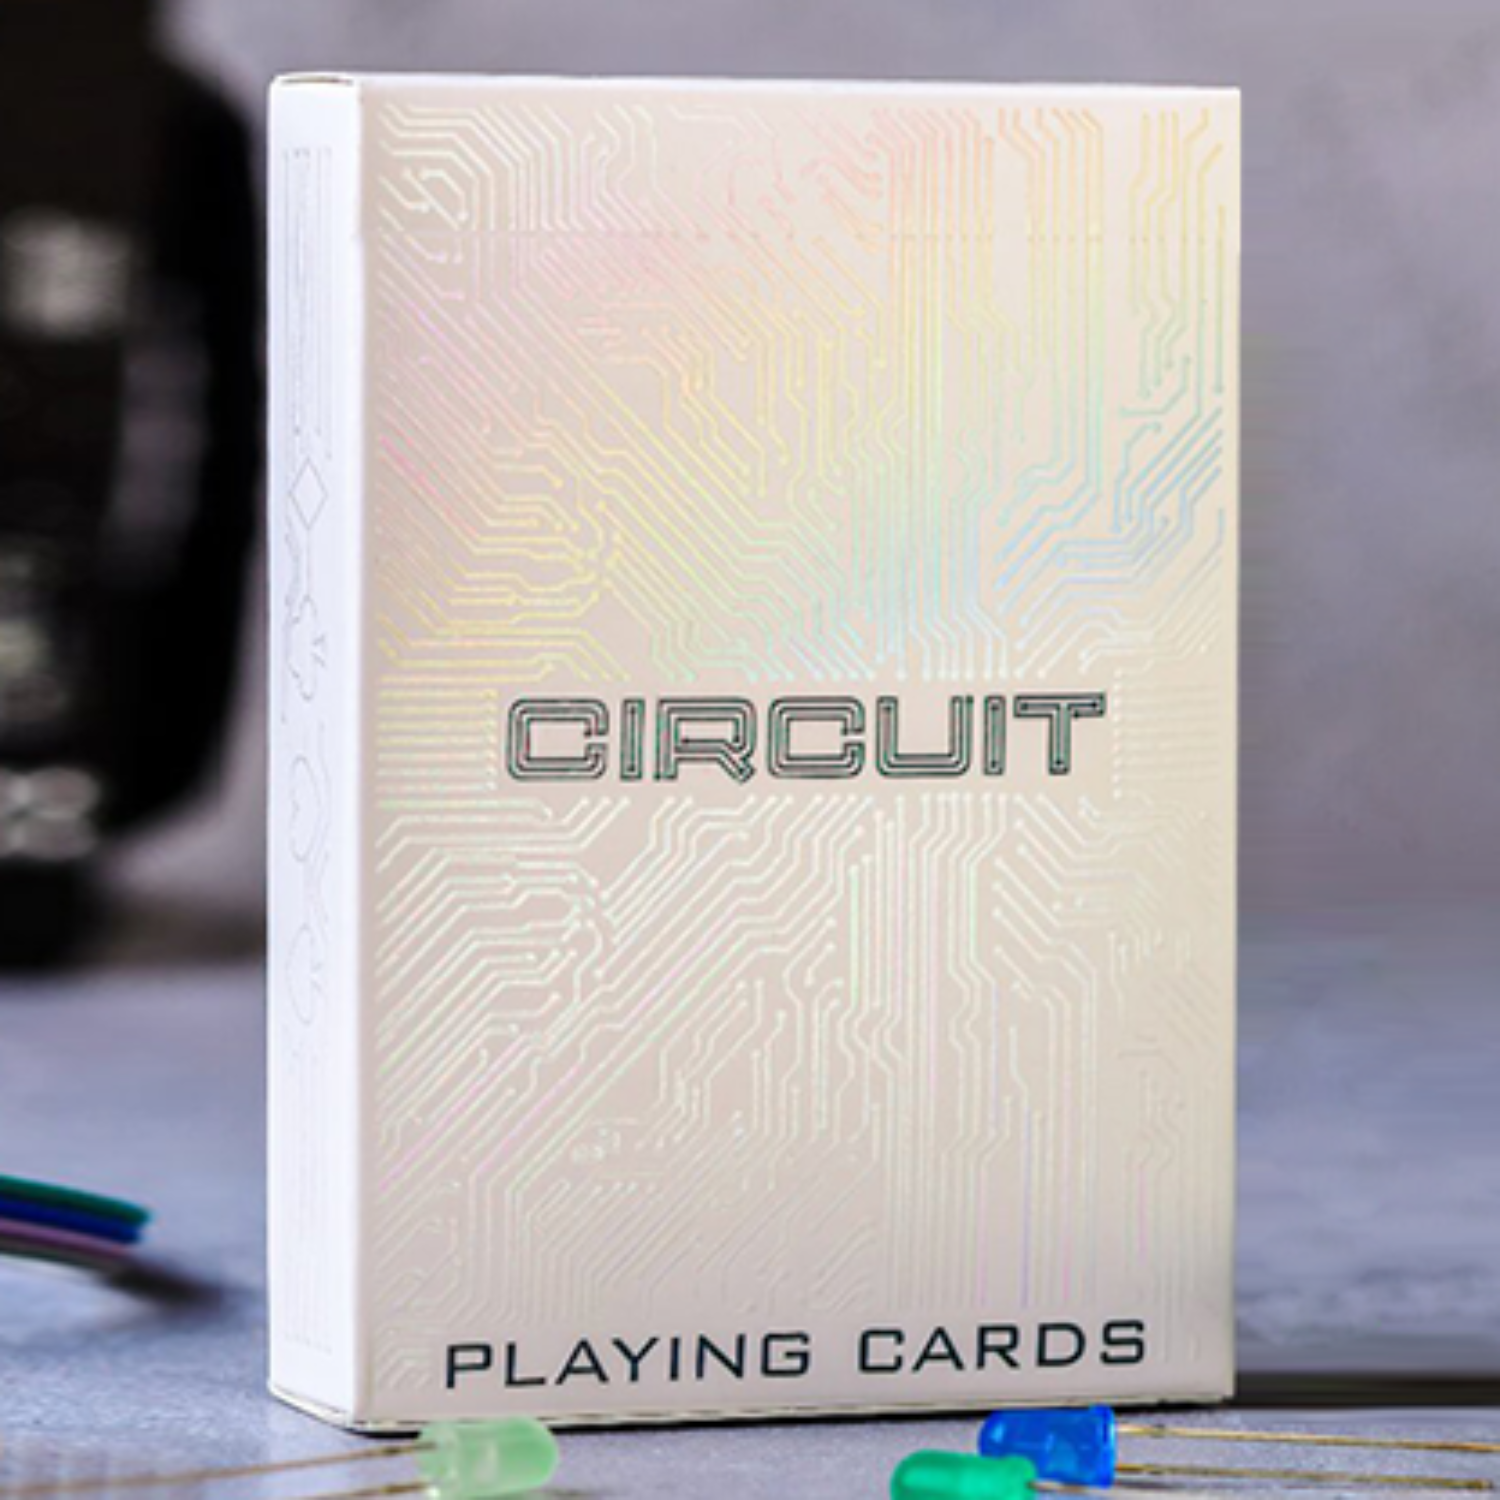 [서킷/화이트]Circuit (White) Playing Cards by Elephant Playing Cards